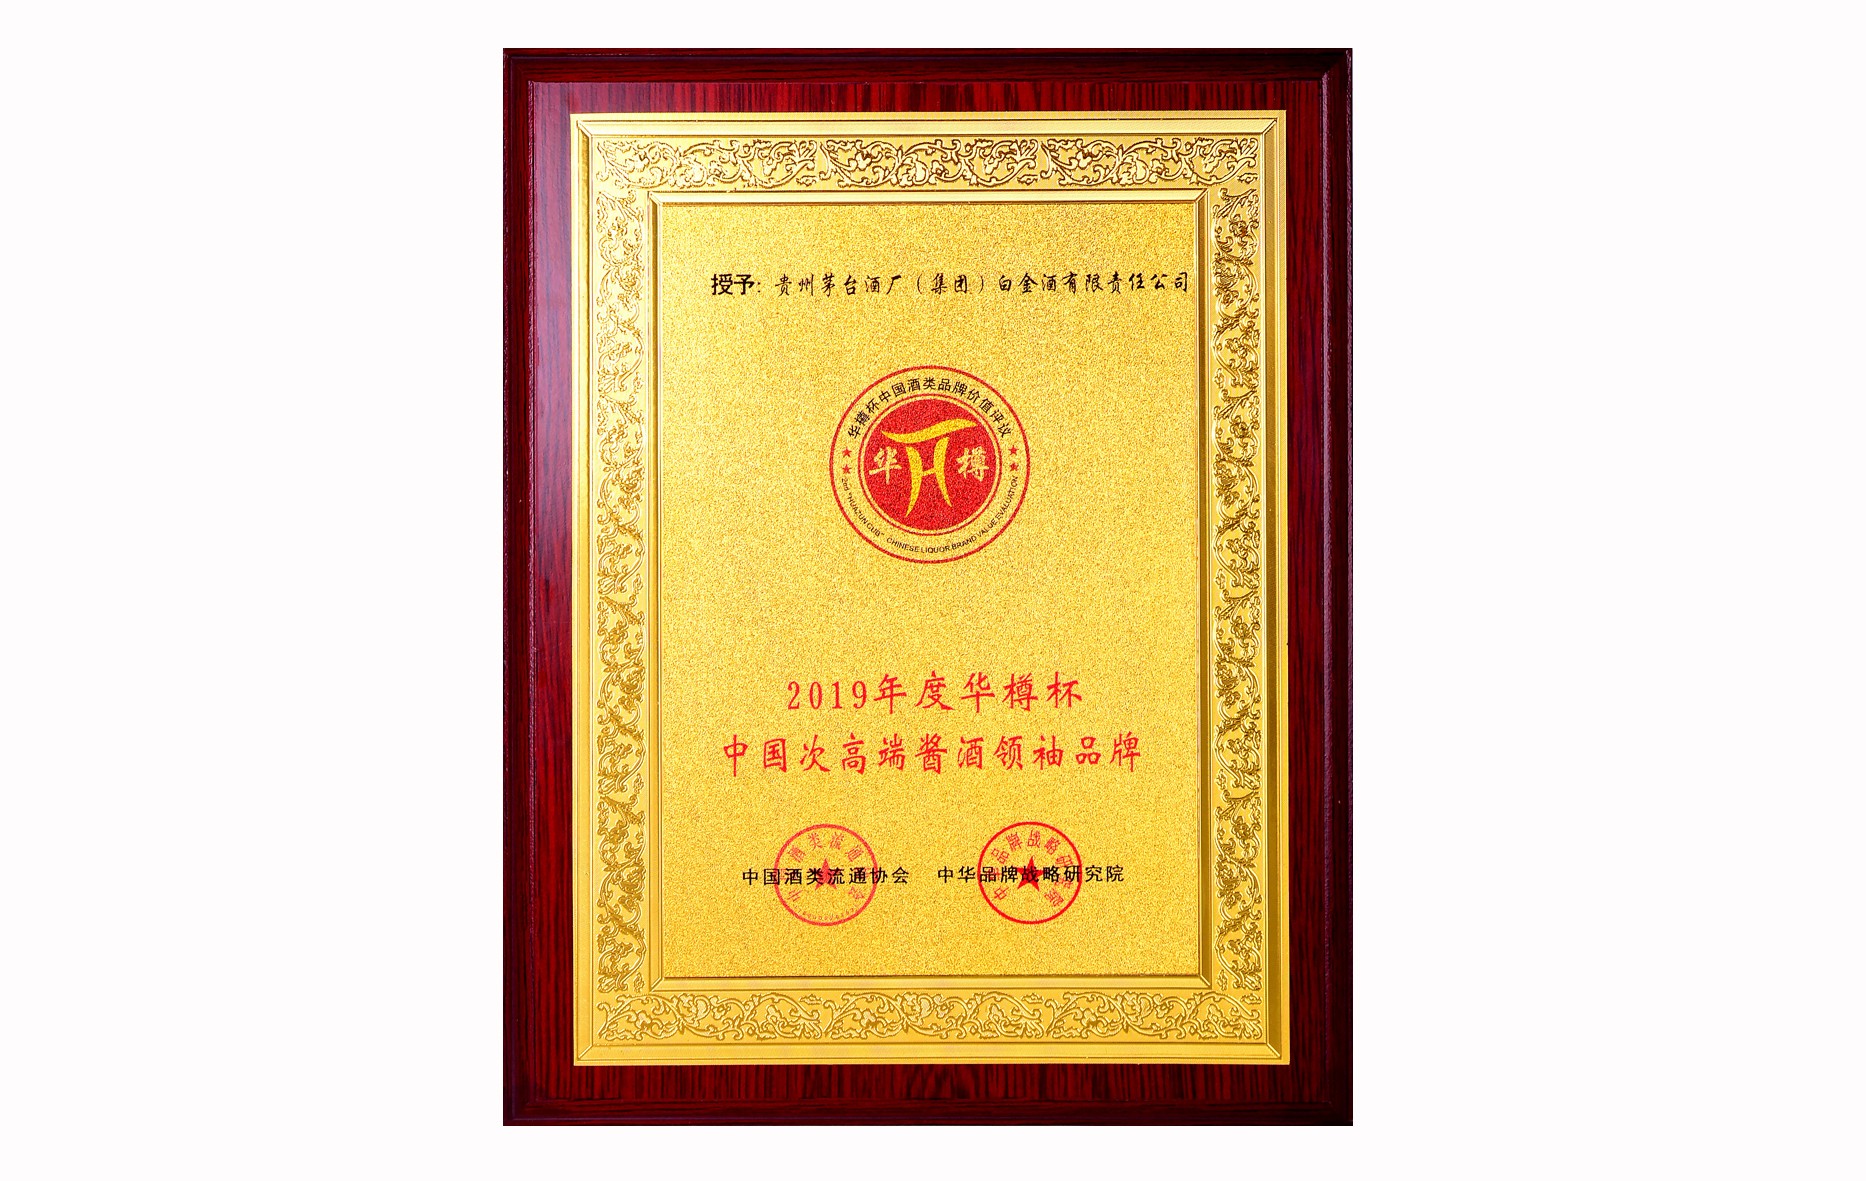 2019年度华樽杯中国次高端酱酒领袖品牌